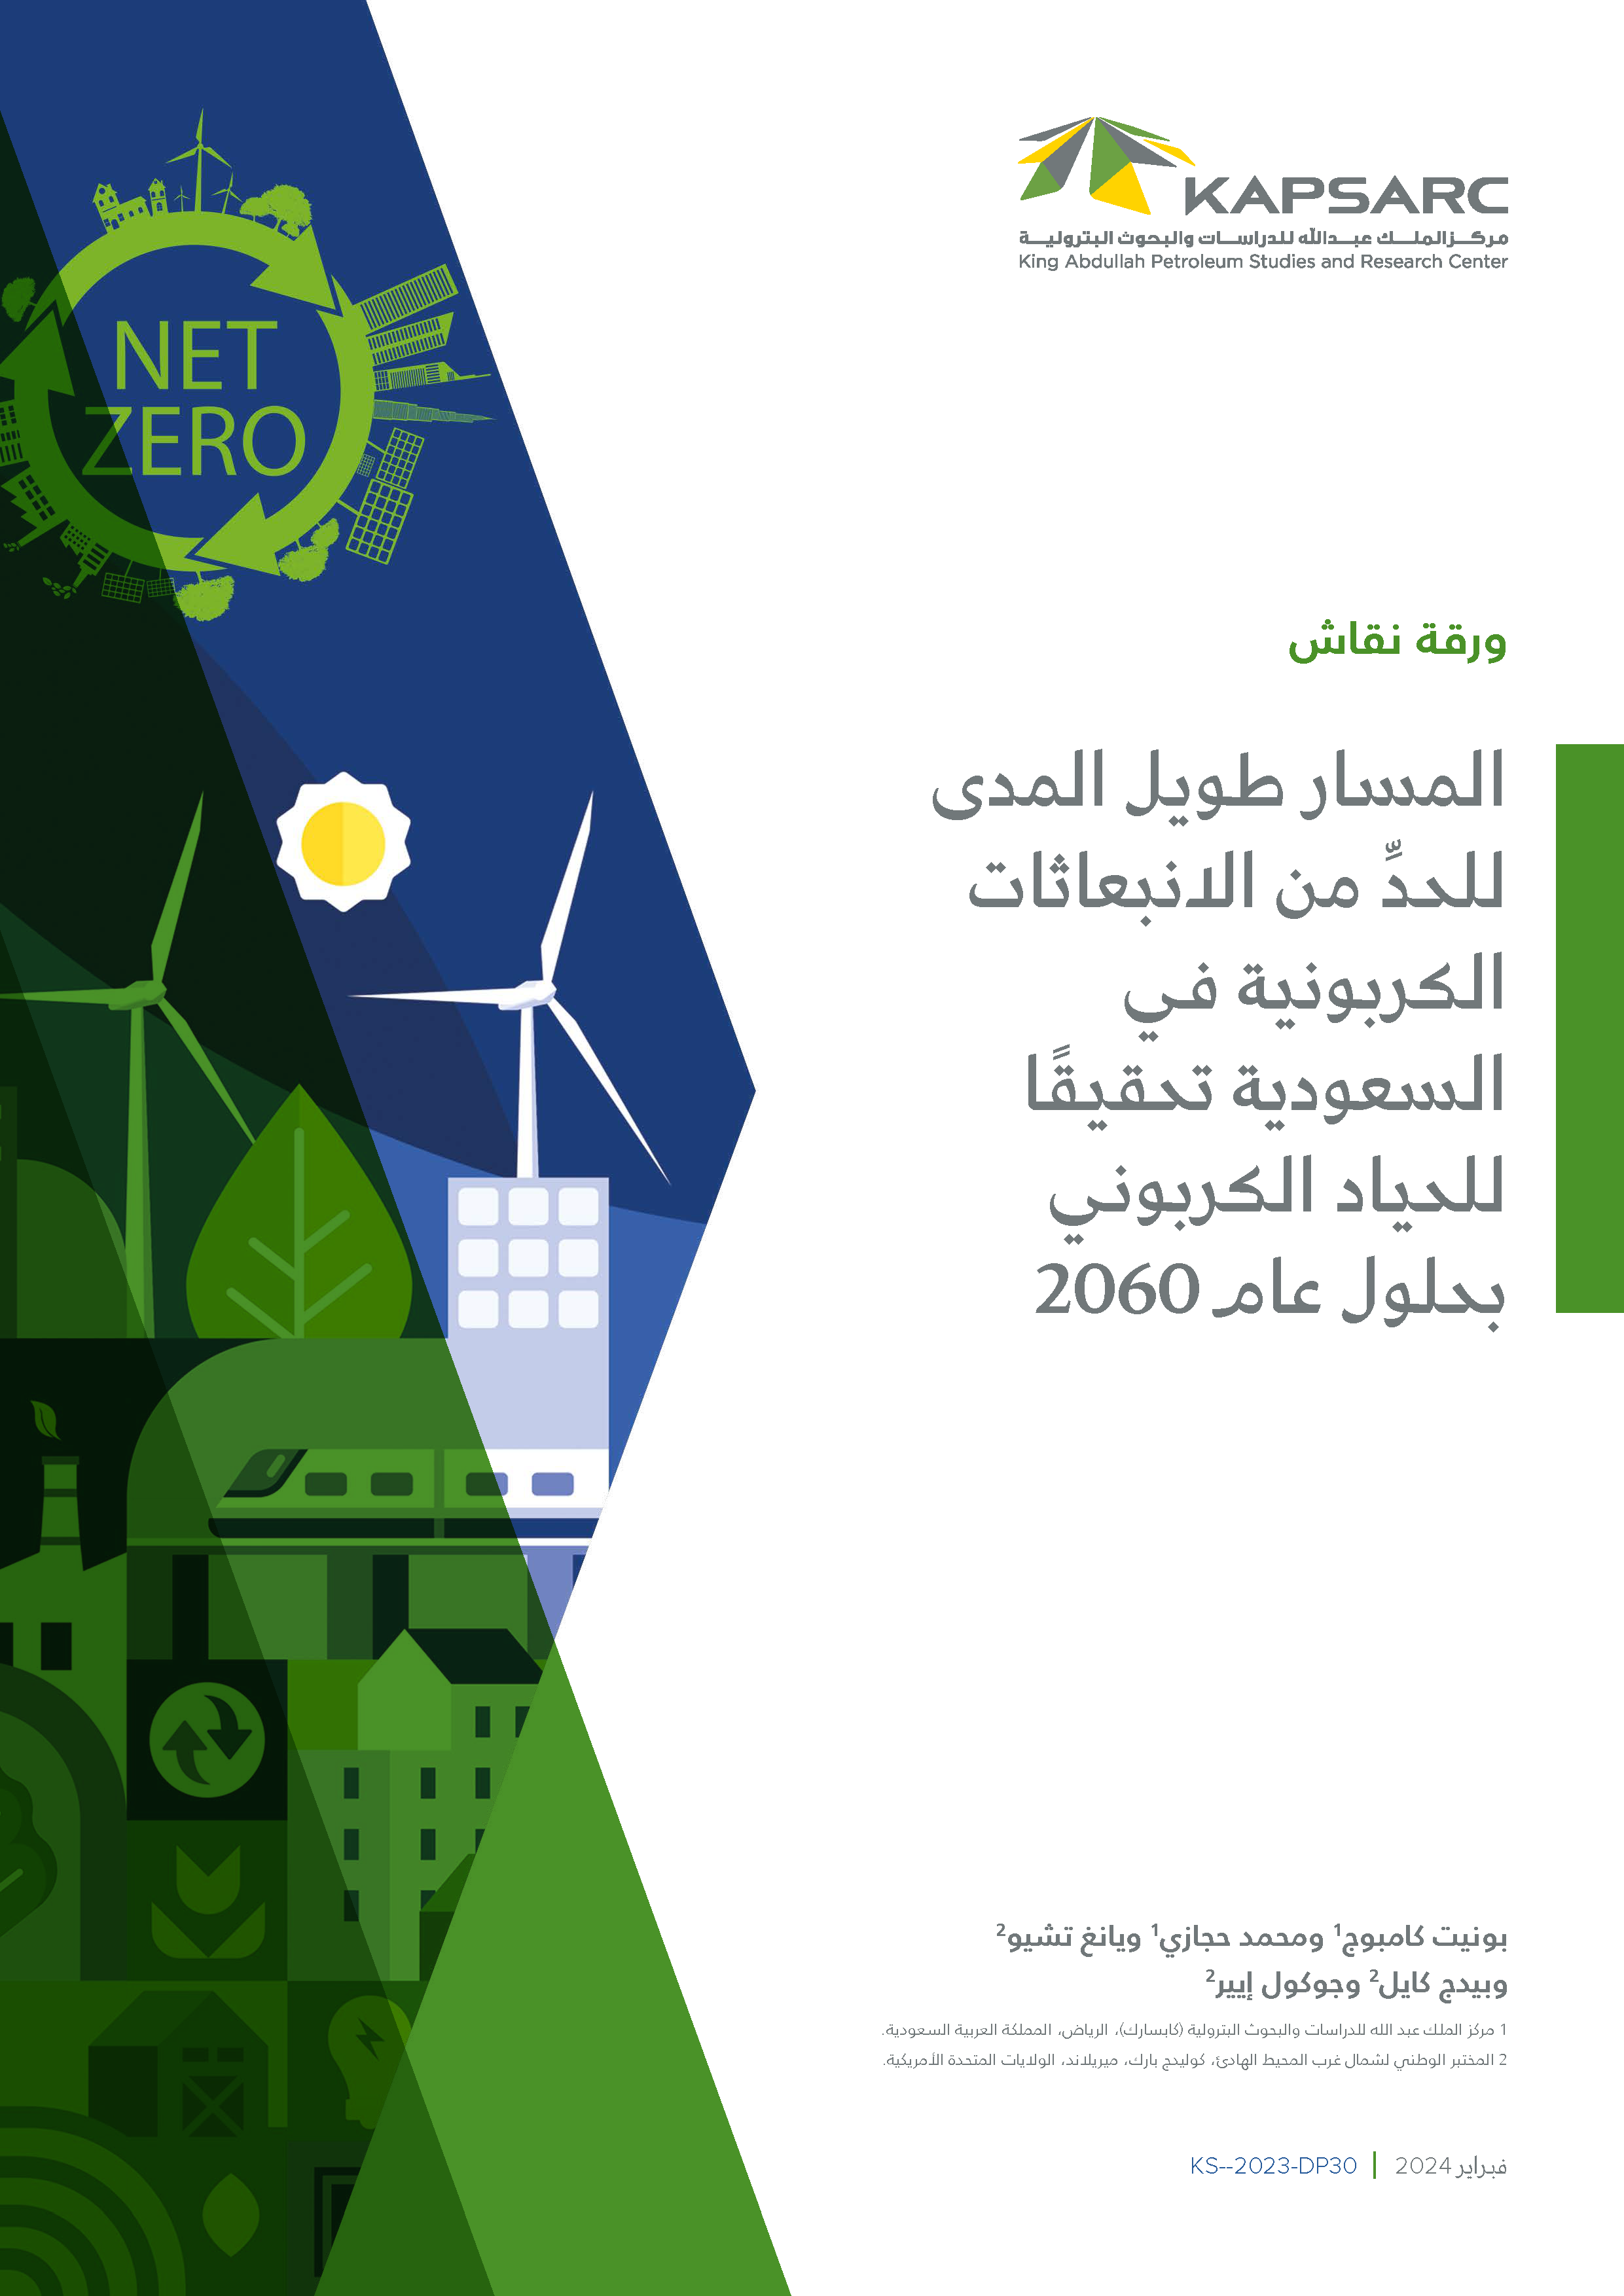 المسار طويل المدى للحدِّ من الانبعاثات الكربونية في السعودية تحقيقًا للحياد الكربوني بحلول عام 2060